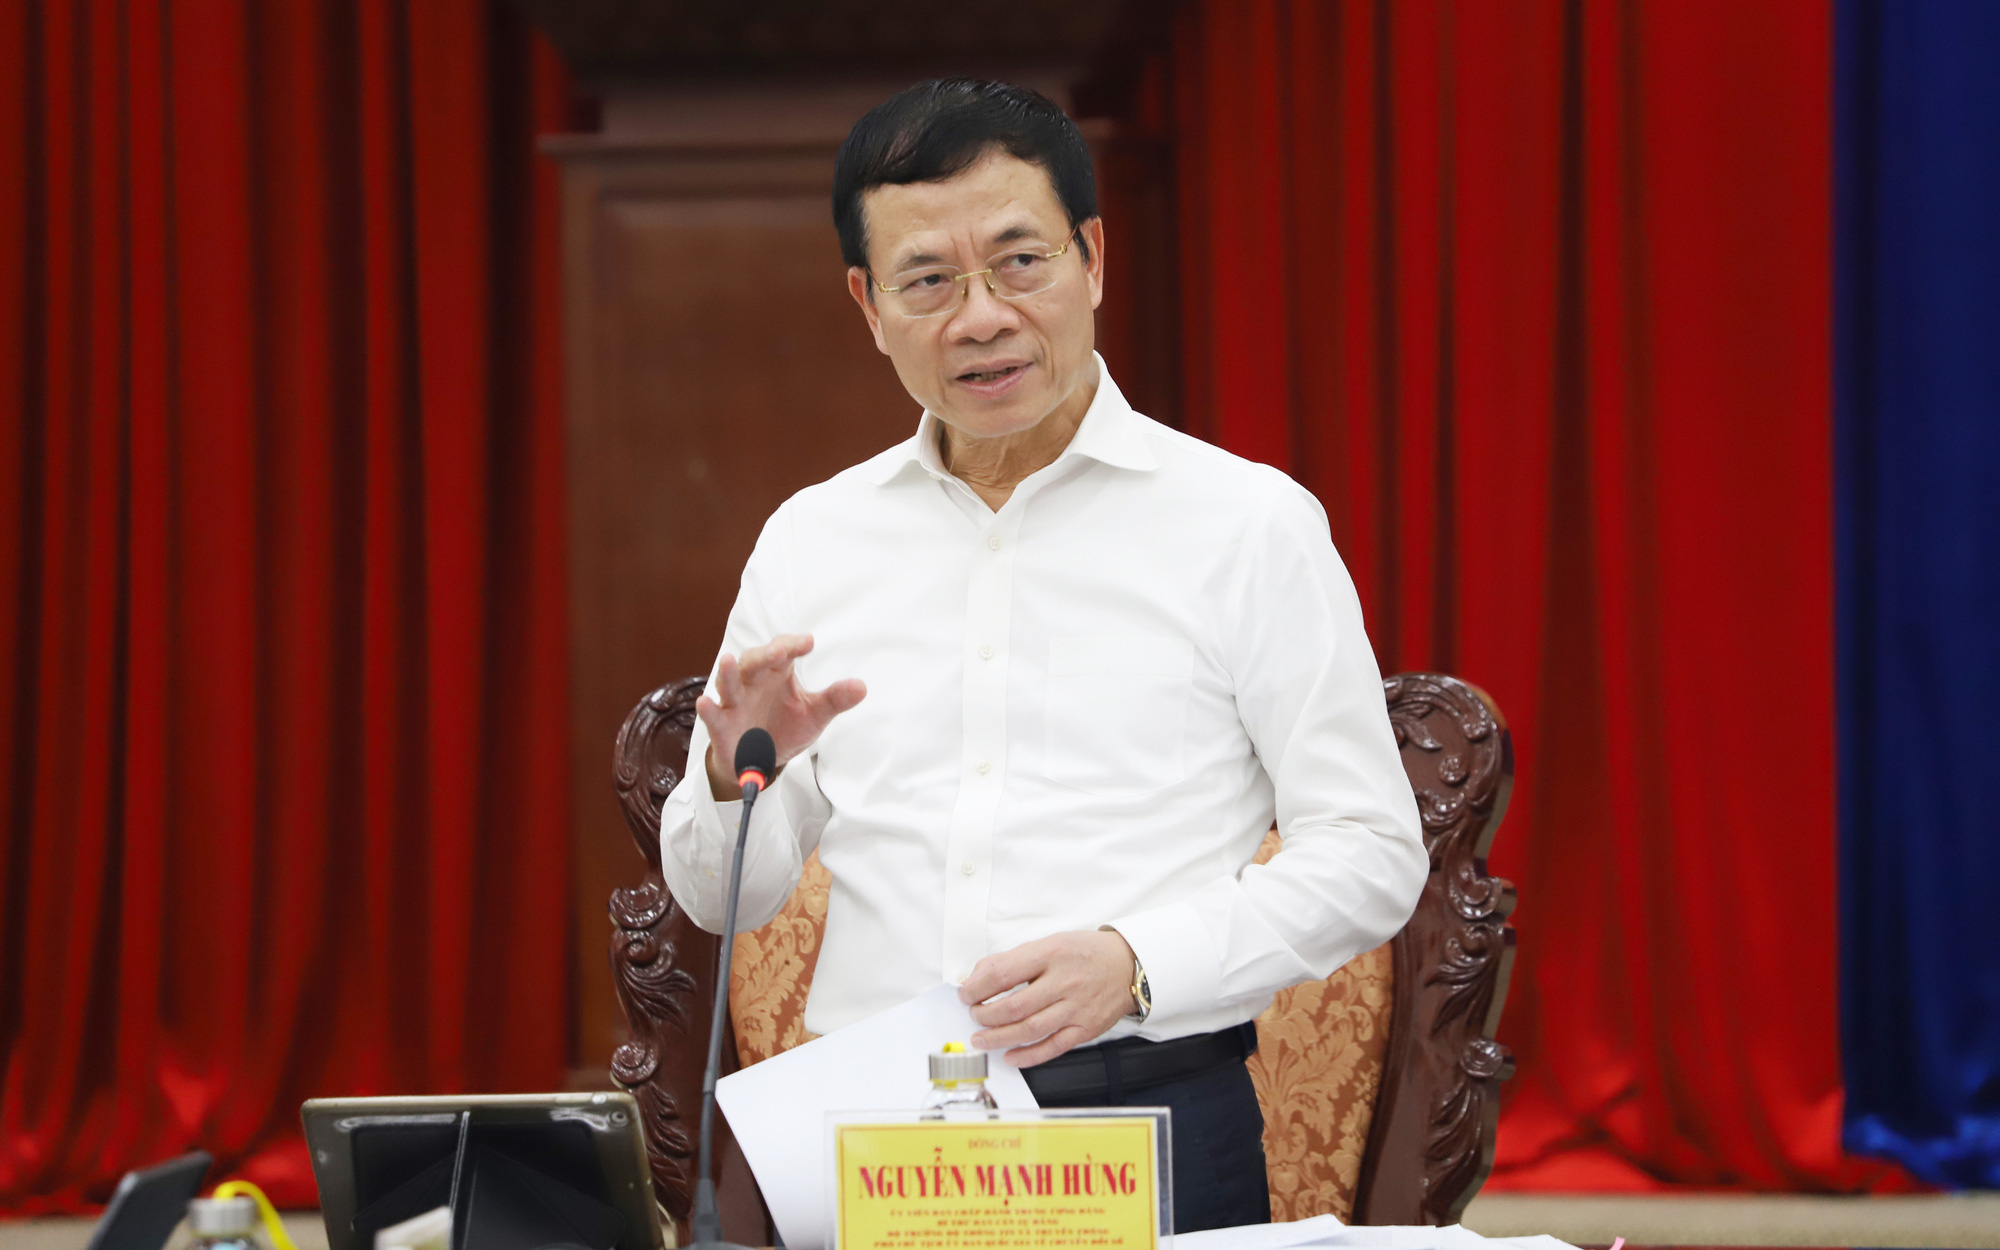 Bộ trưởng Nguyễn Mạnh Hùng đề nghị Bạc Liêu tái lập Sở Thông tin và Truyền thông